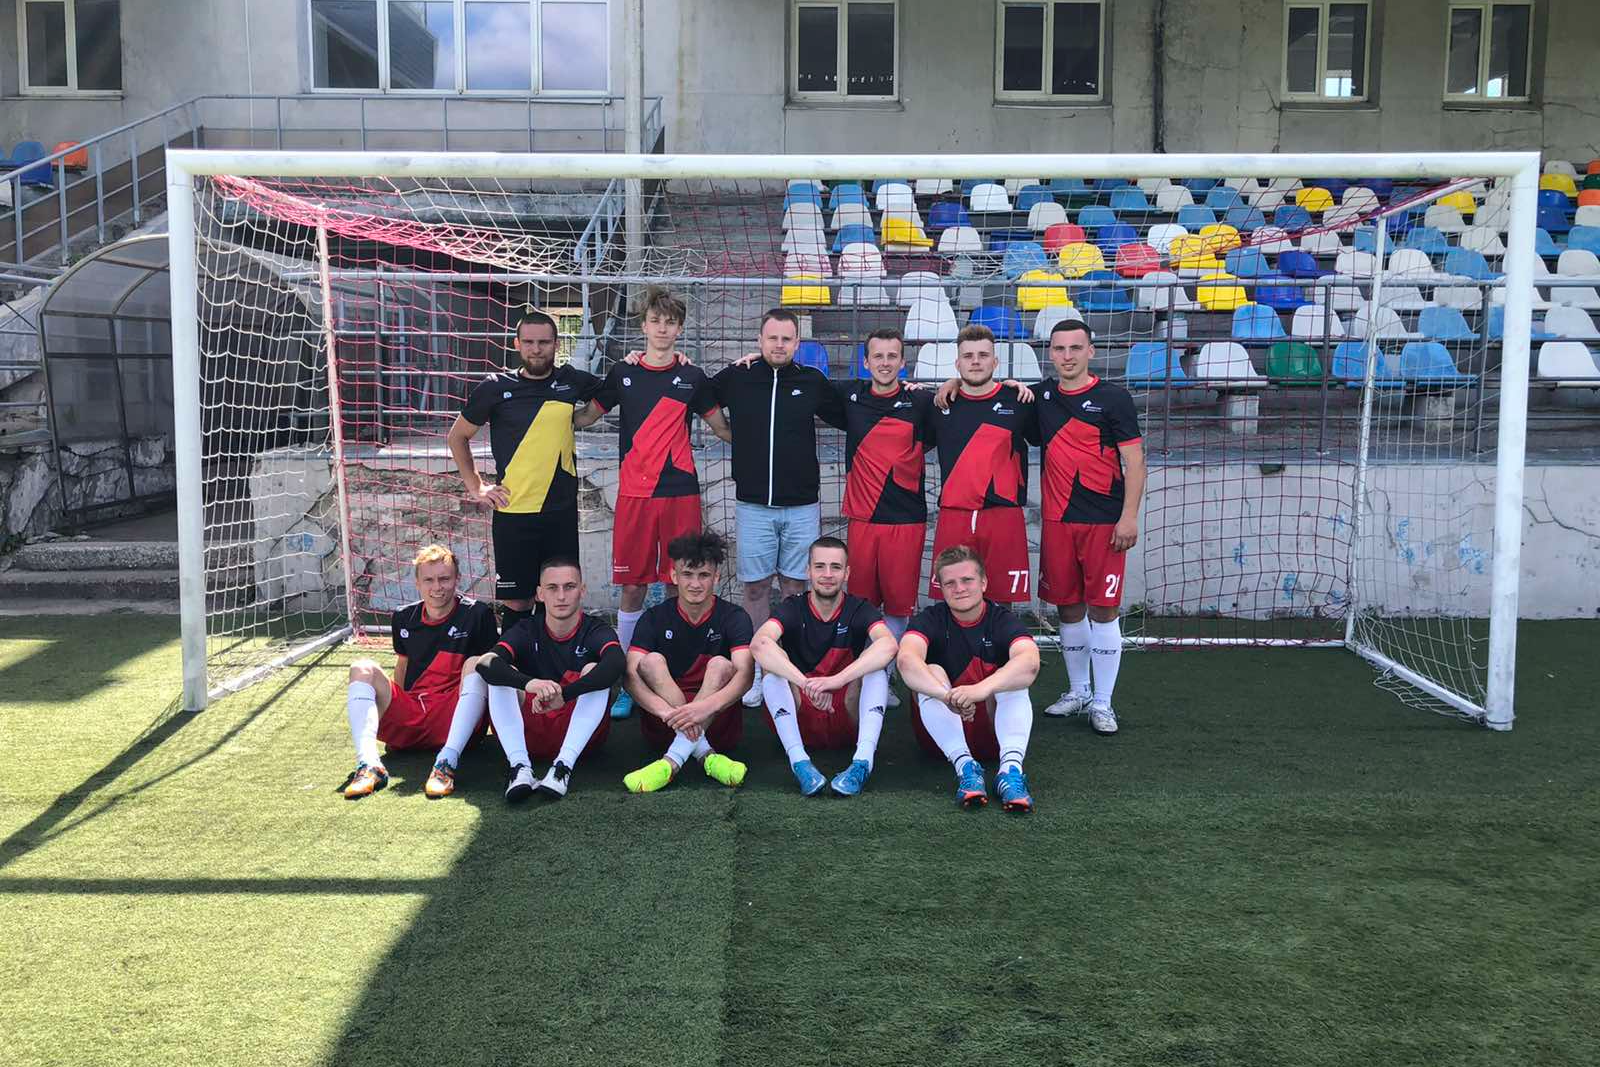 Команда Мининского выиграла чемпионат по футболу высших учебных заведений Нижнего Новгорода